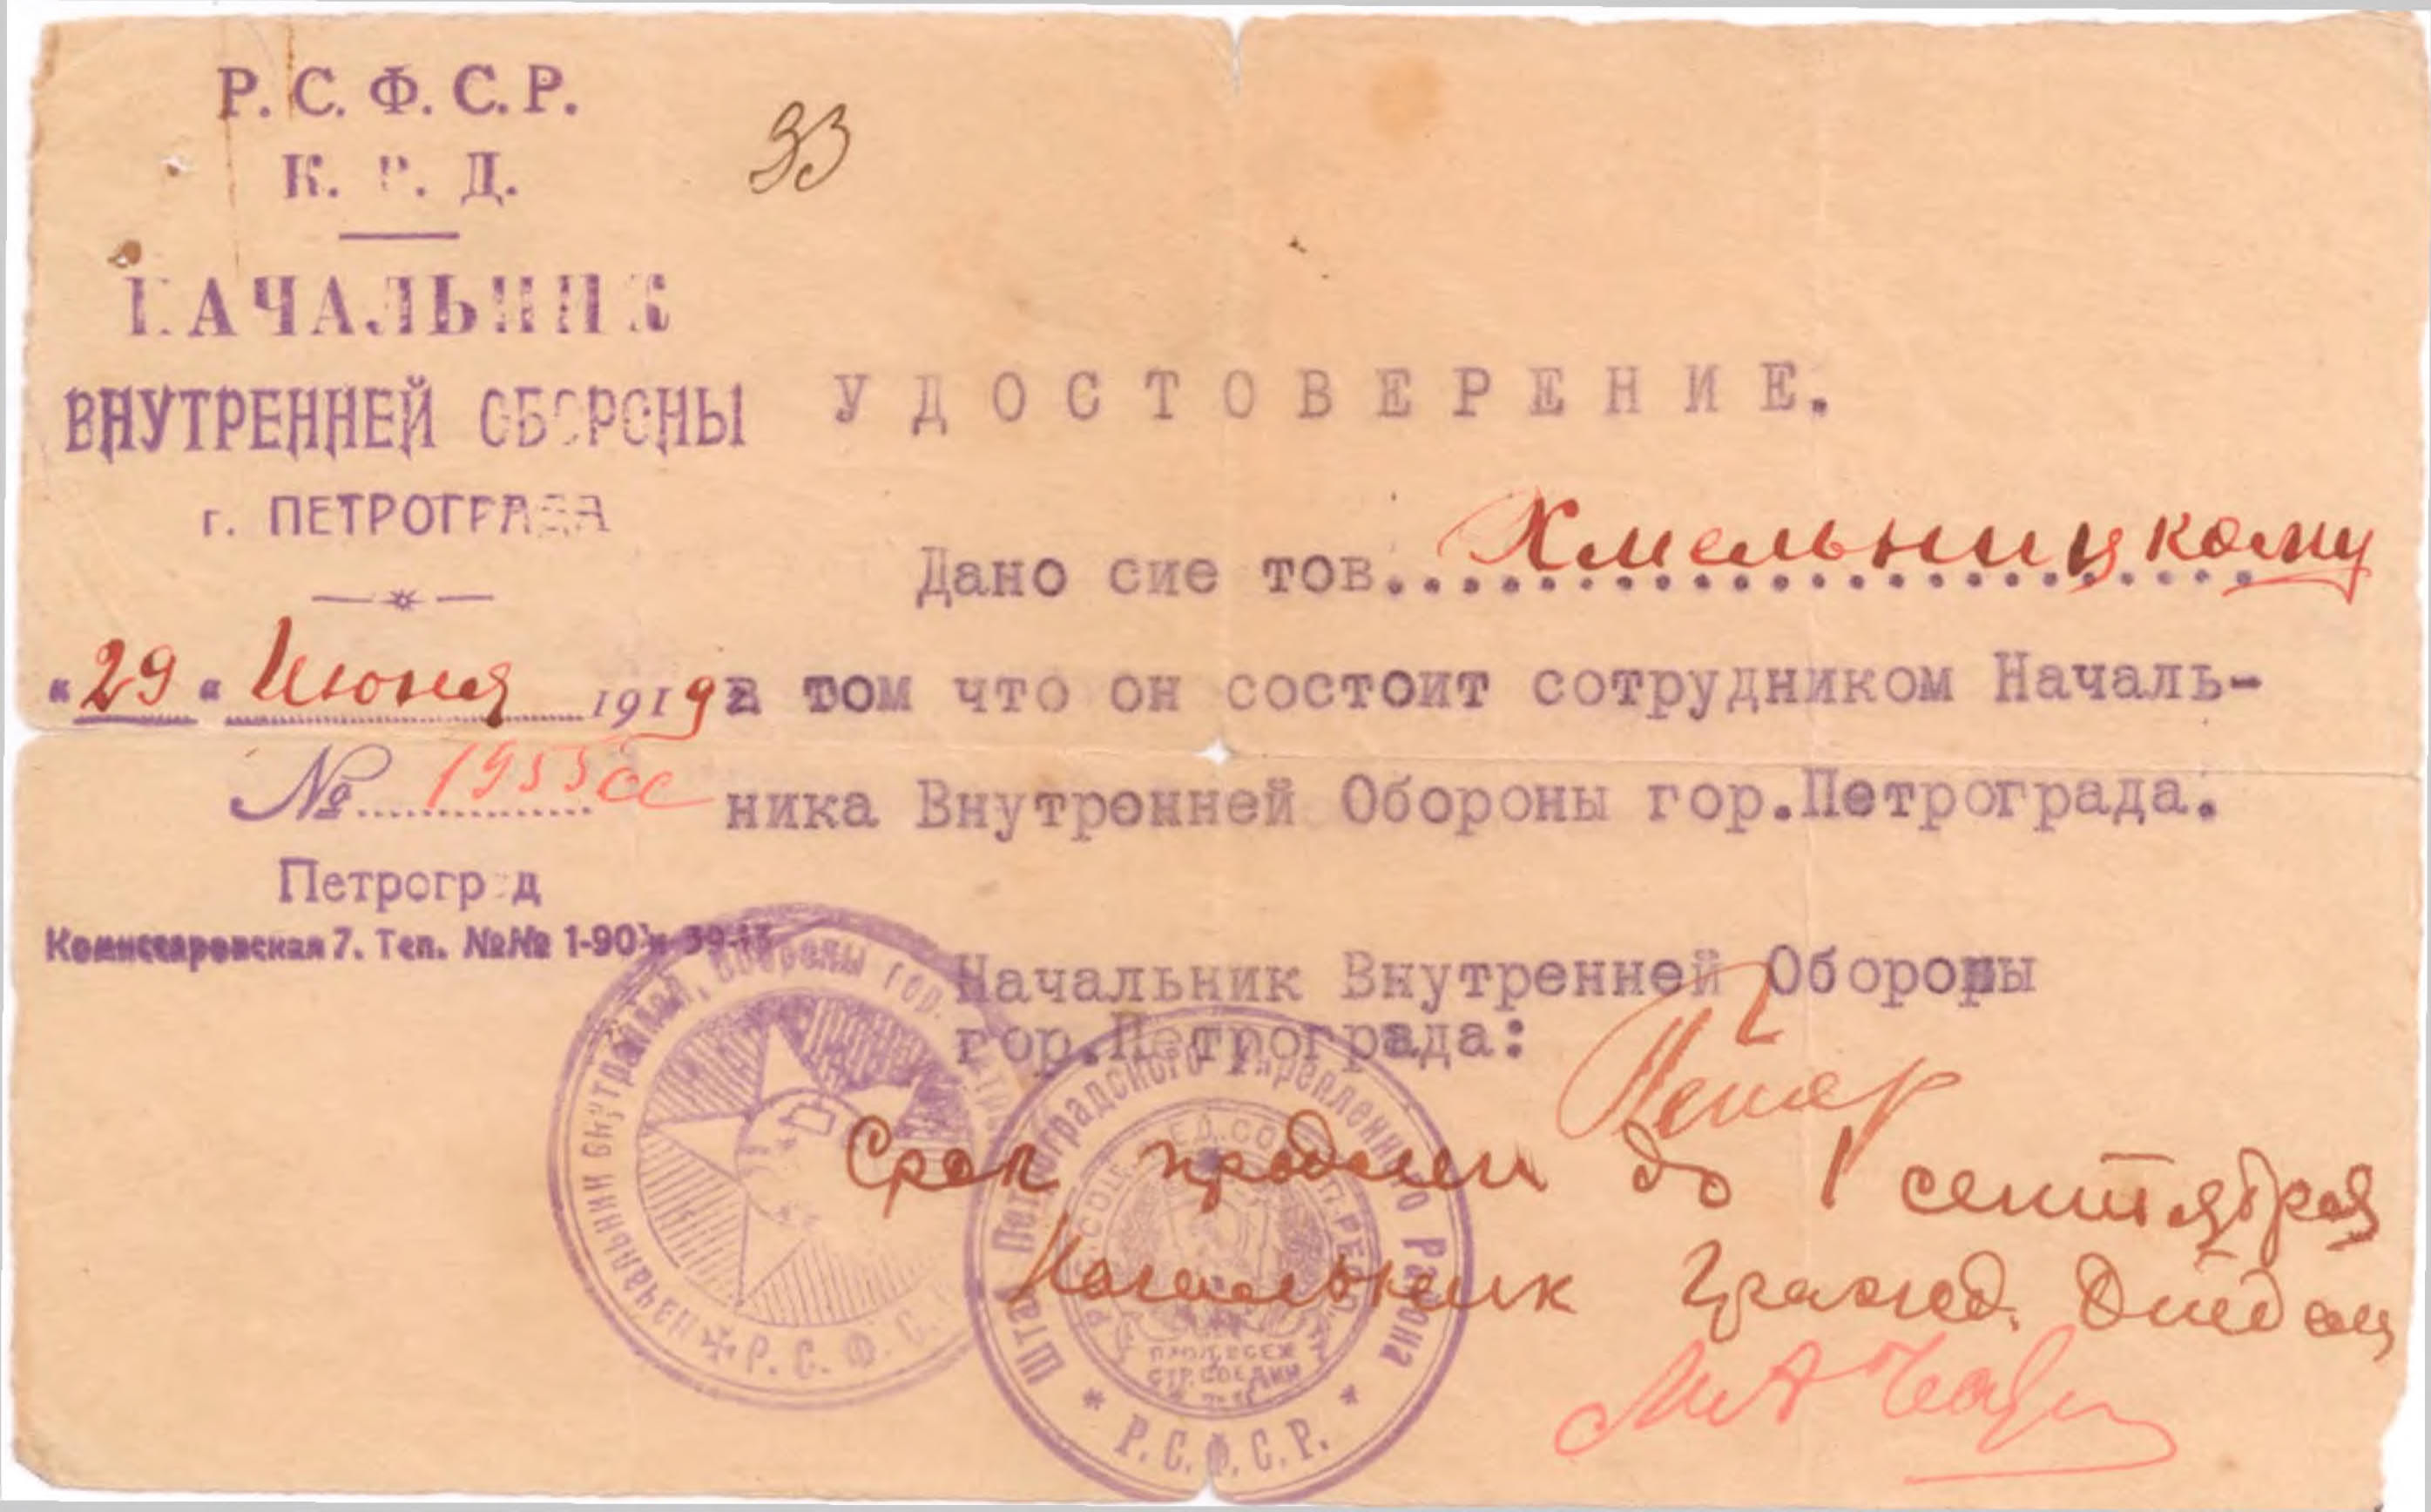 Экспонат #4. Удостоверение помощника начальника Внутренней Обороны г. Петрограда от 29 июня 1919 года